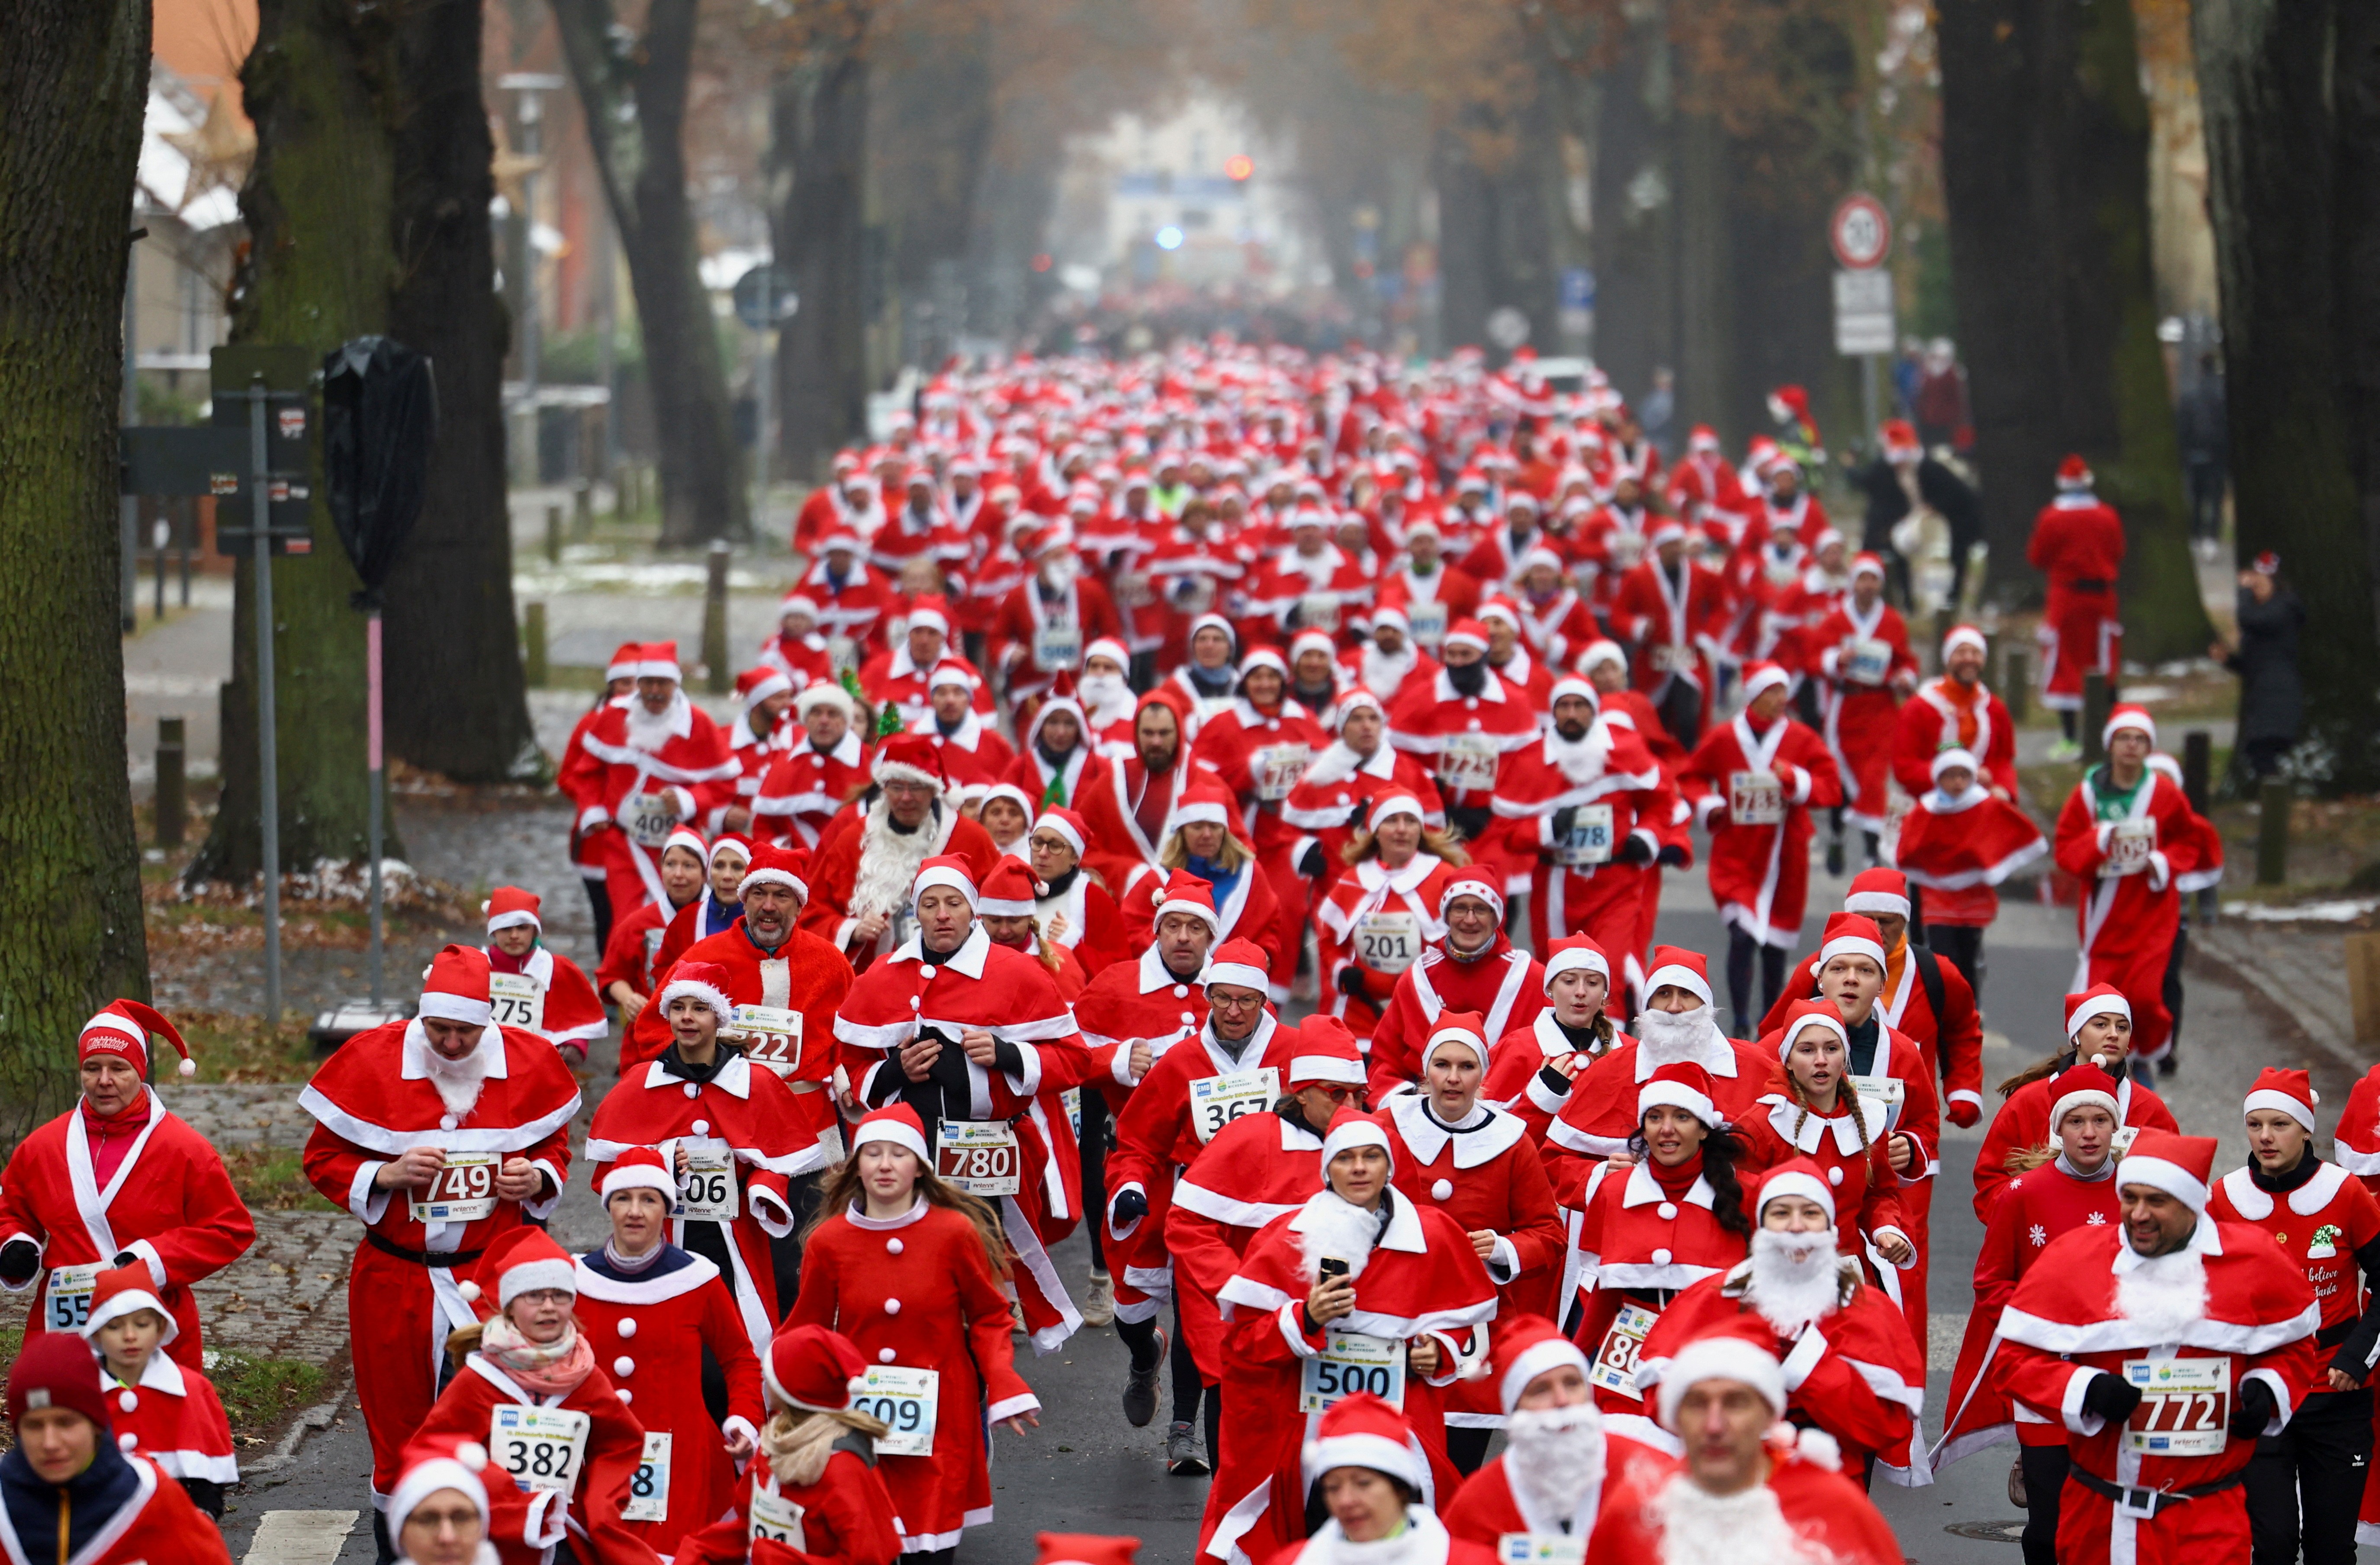 FOTOS: Pessoas se vestem de Papai Noel em corrida na Alemanha